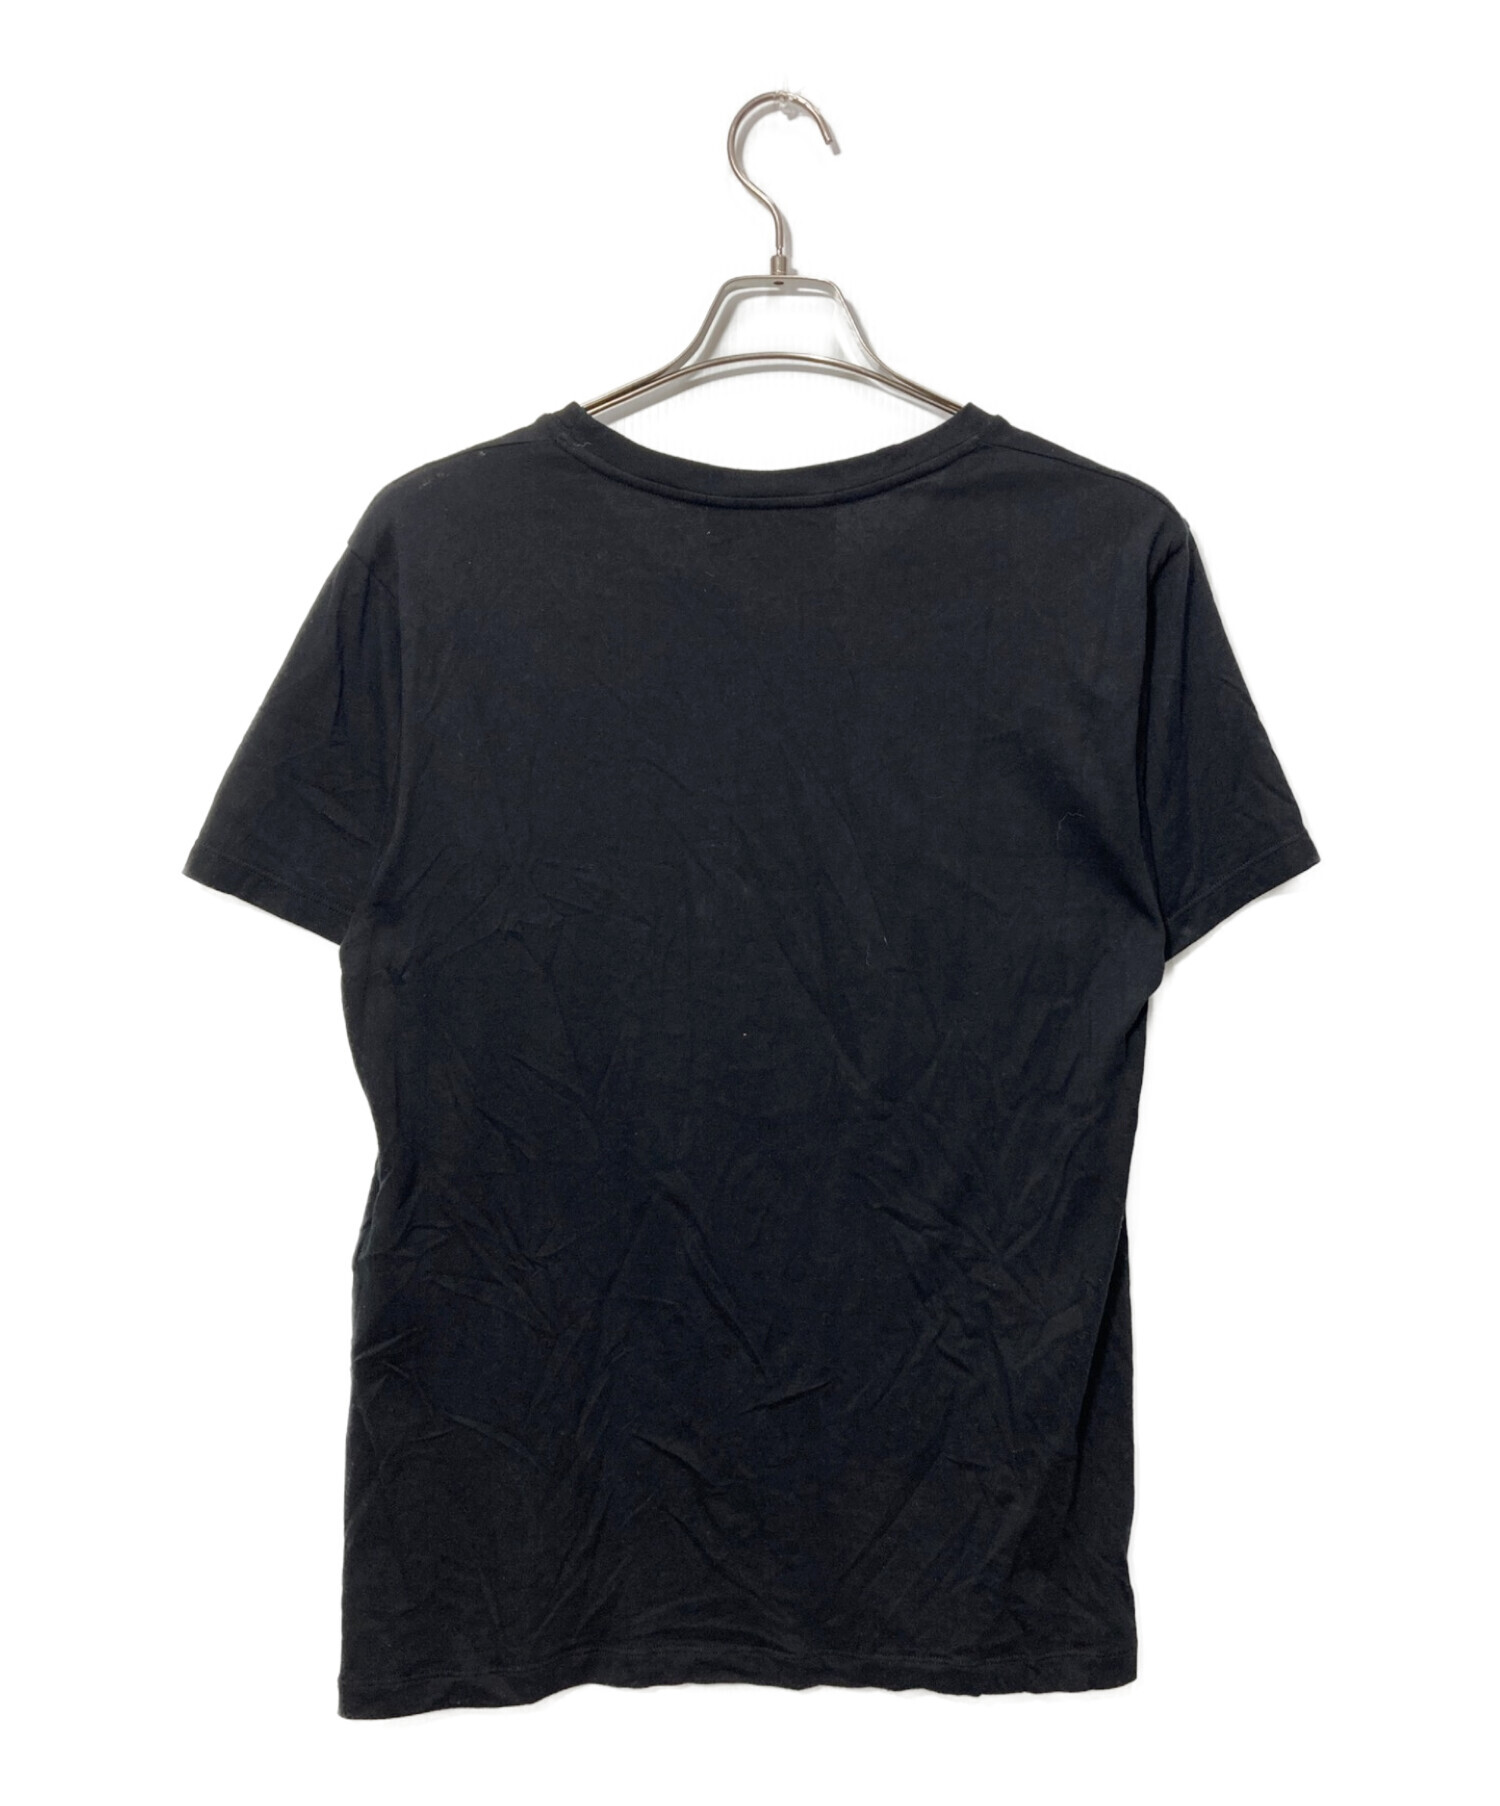 GUCCI (グッチ) インターロッキングG コットン オーバーサイズ Tシャツ ブラック サイズ:XS